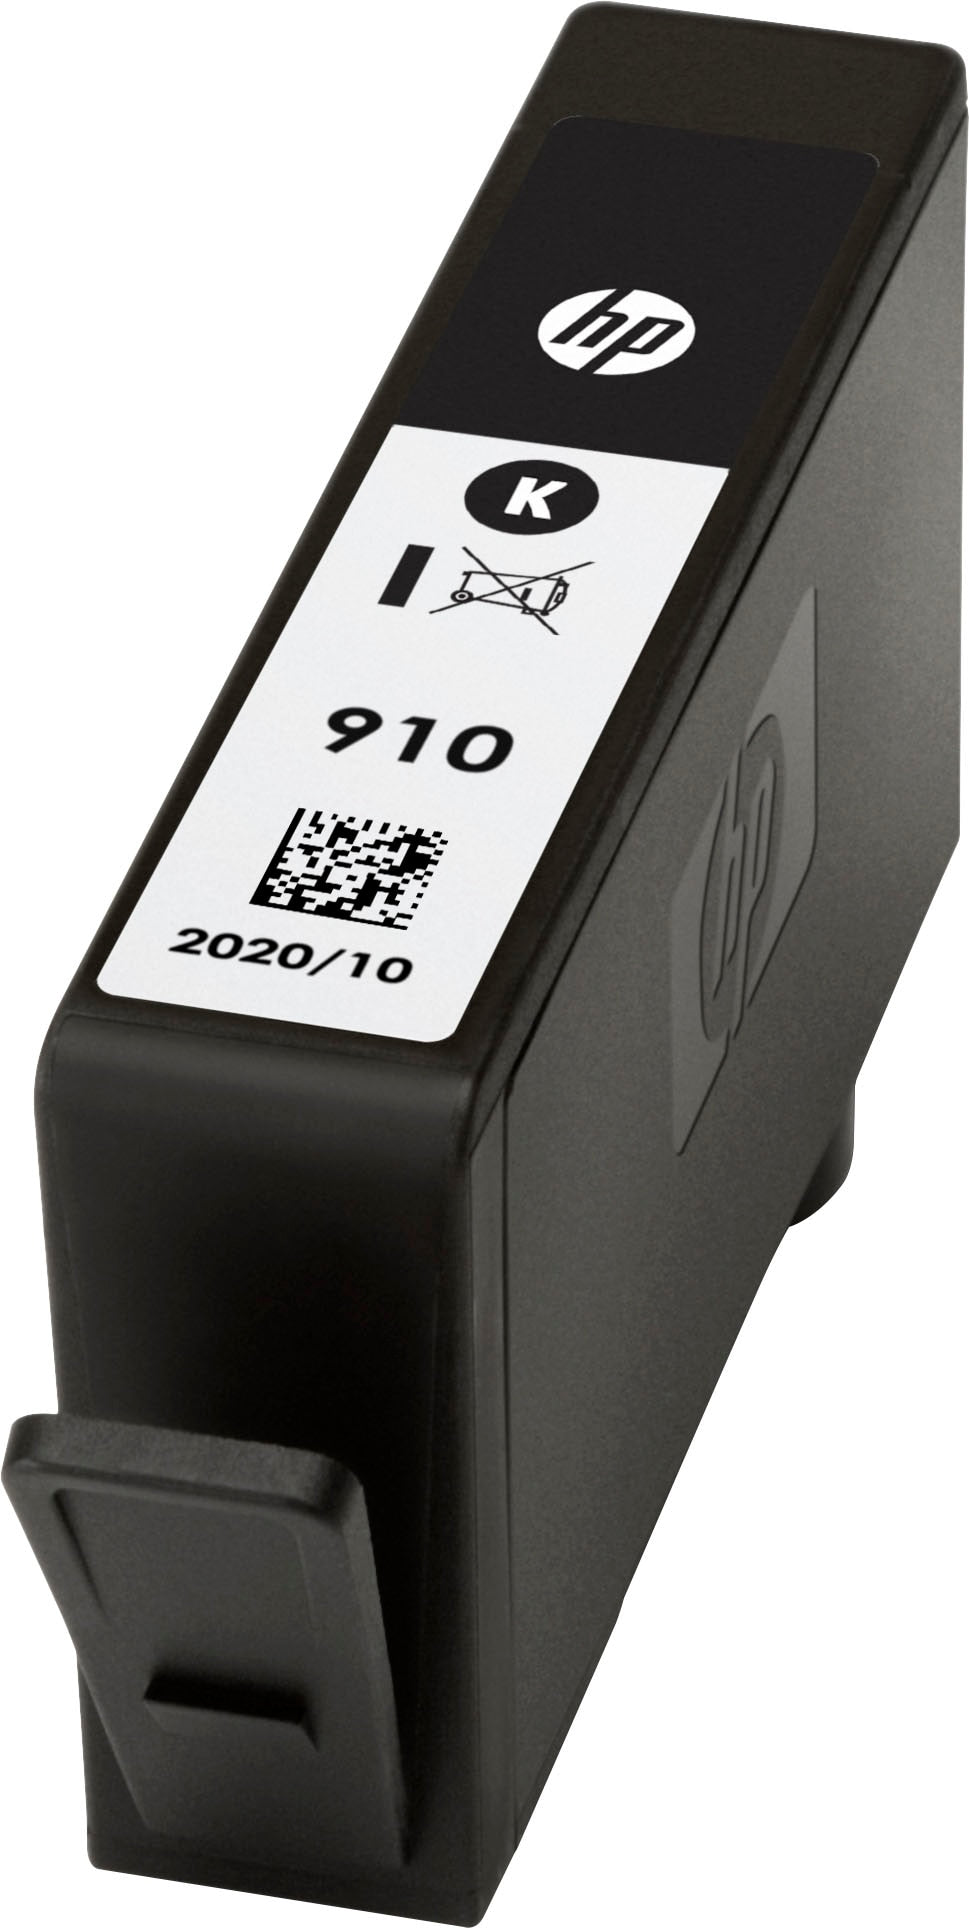 HP - 910 Standard Capacity Ink Cartridge - Black_1